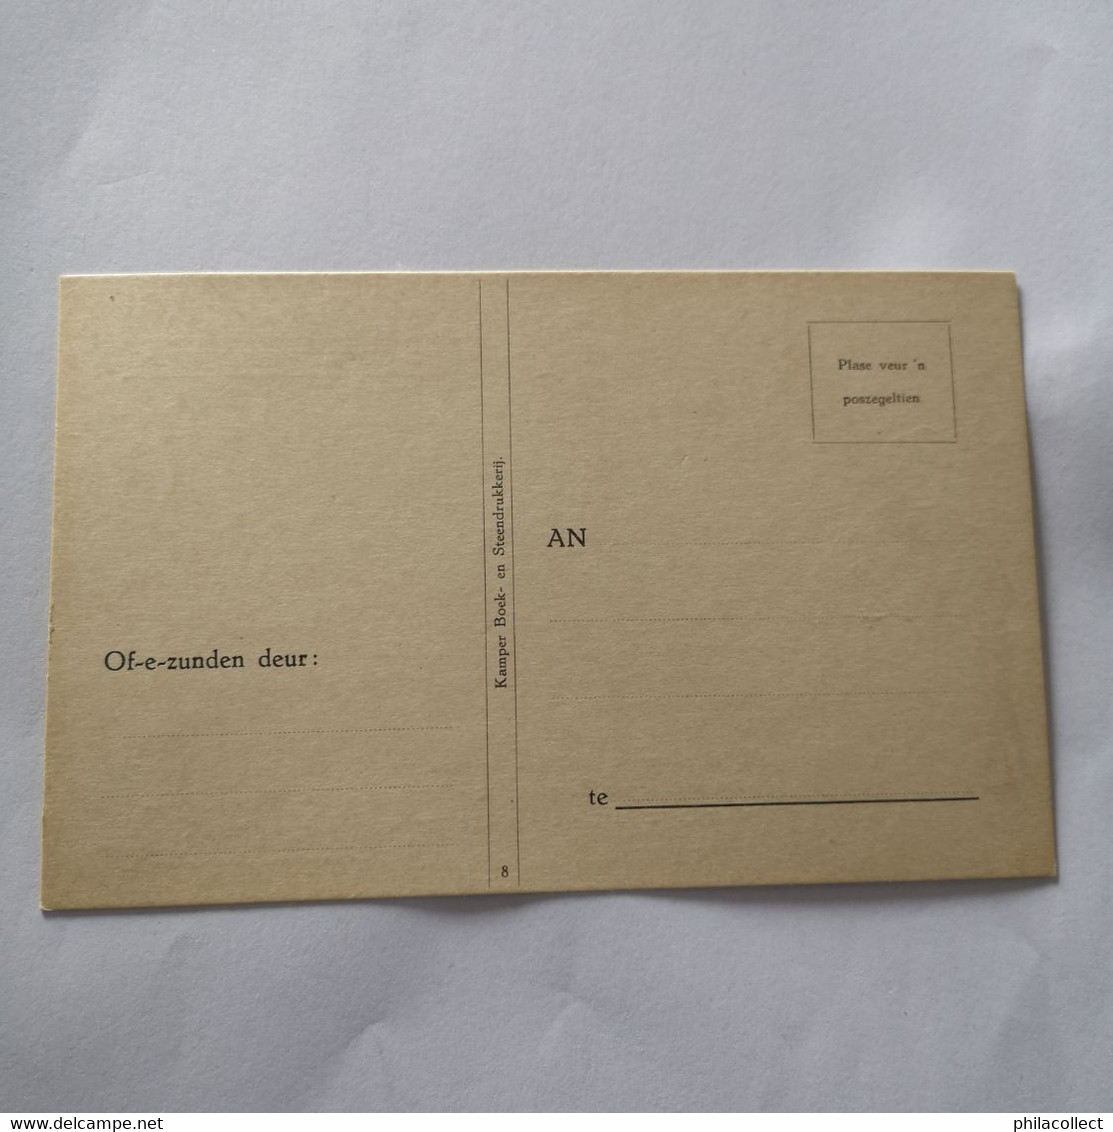 Kampen (Ov.) Orginele omslag met 8 anzicht - briefkaarten met Kamper Rijmpjes (8 verschillende) 19?? Zeldzaam compleet